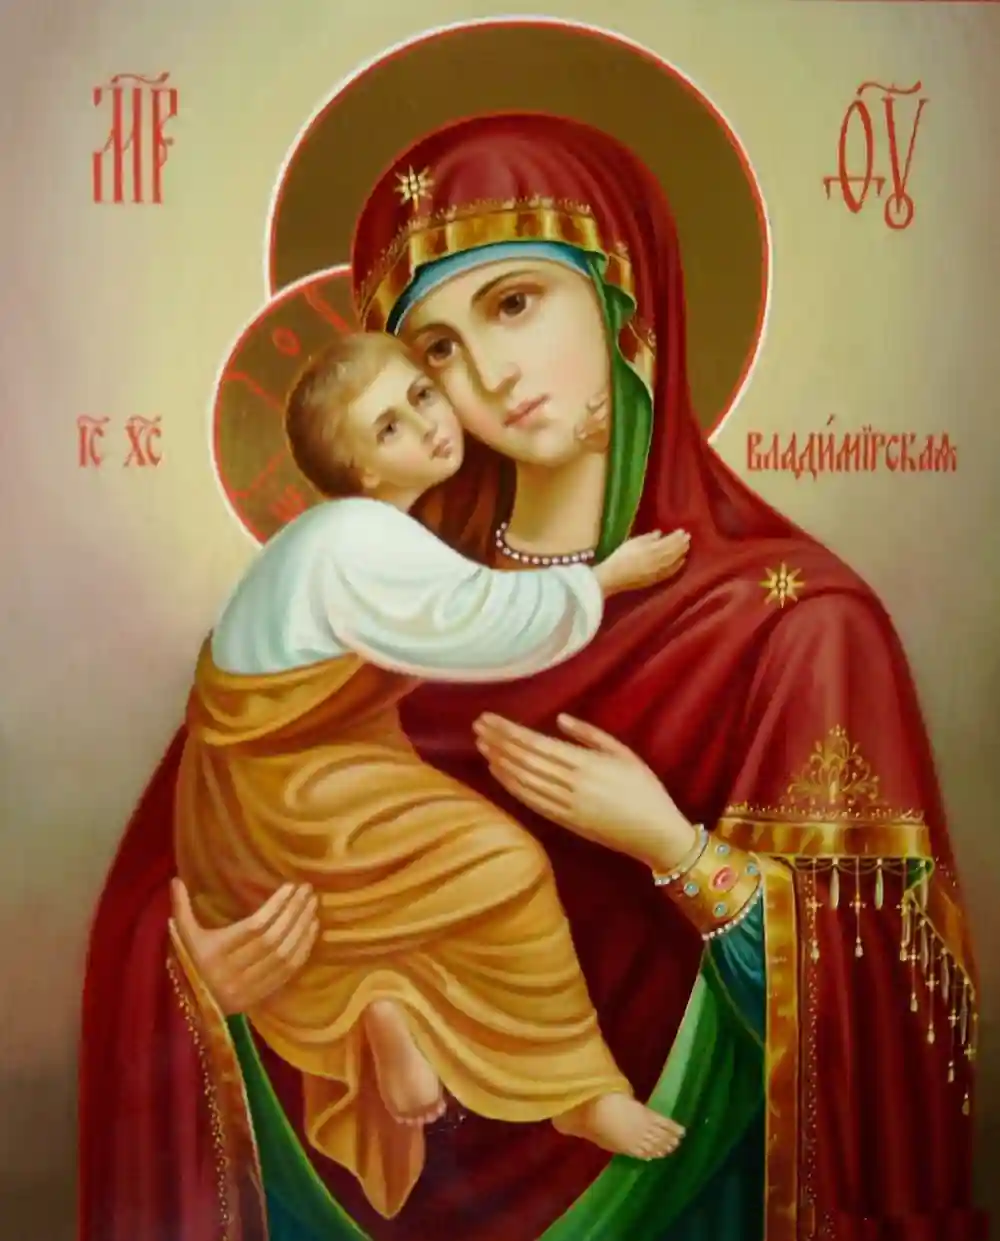 Владимирская икона Божьей матери, икона в подарок